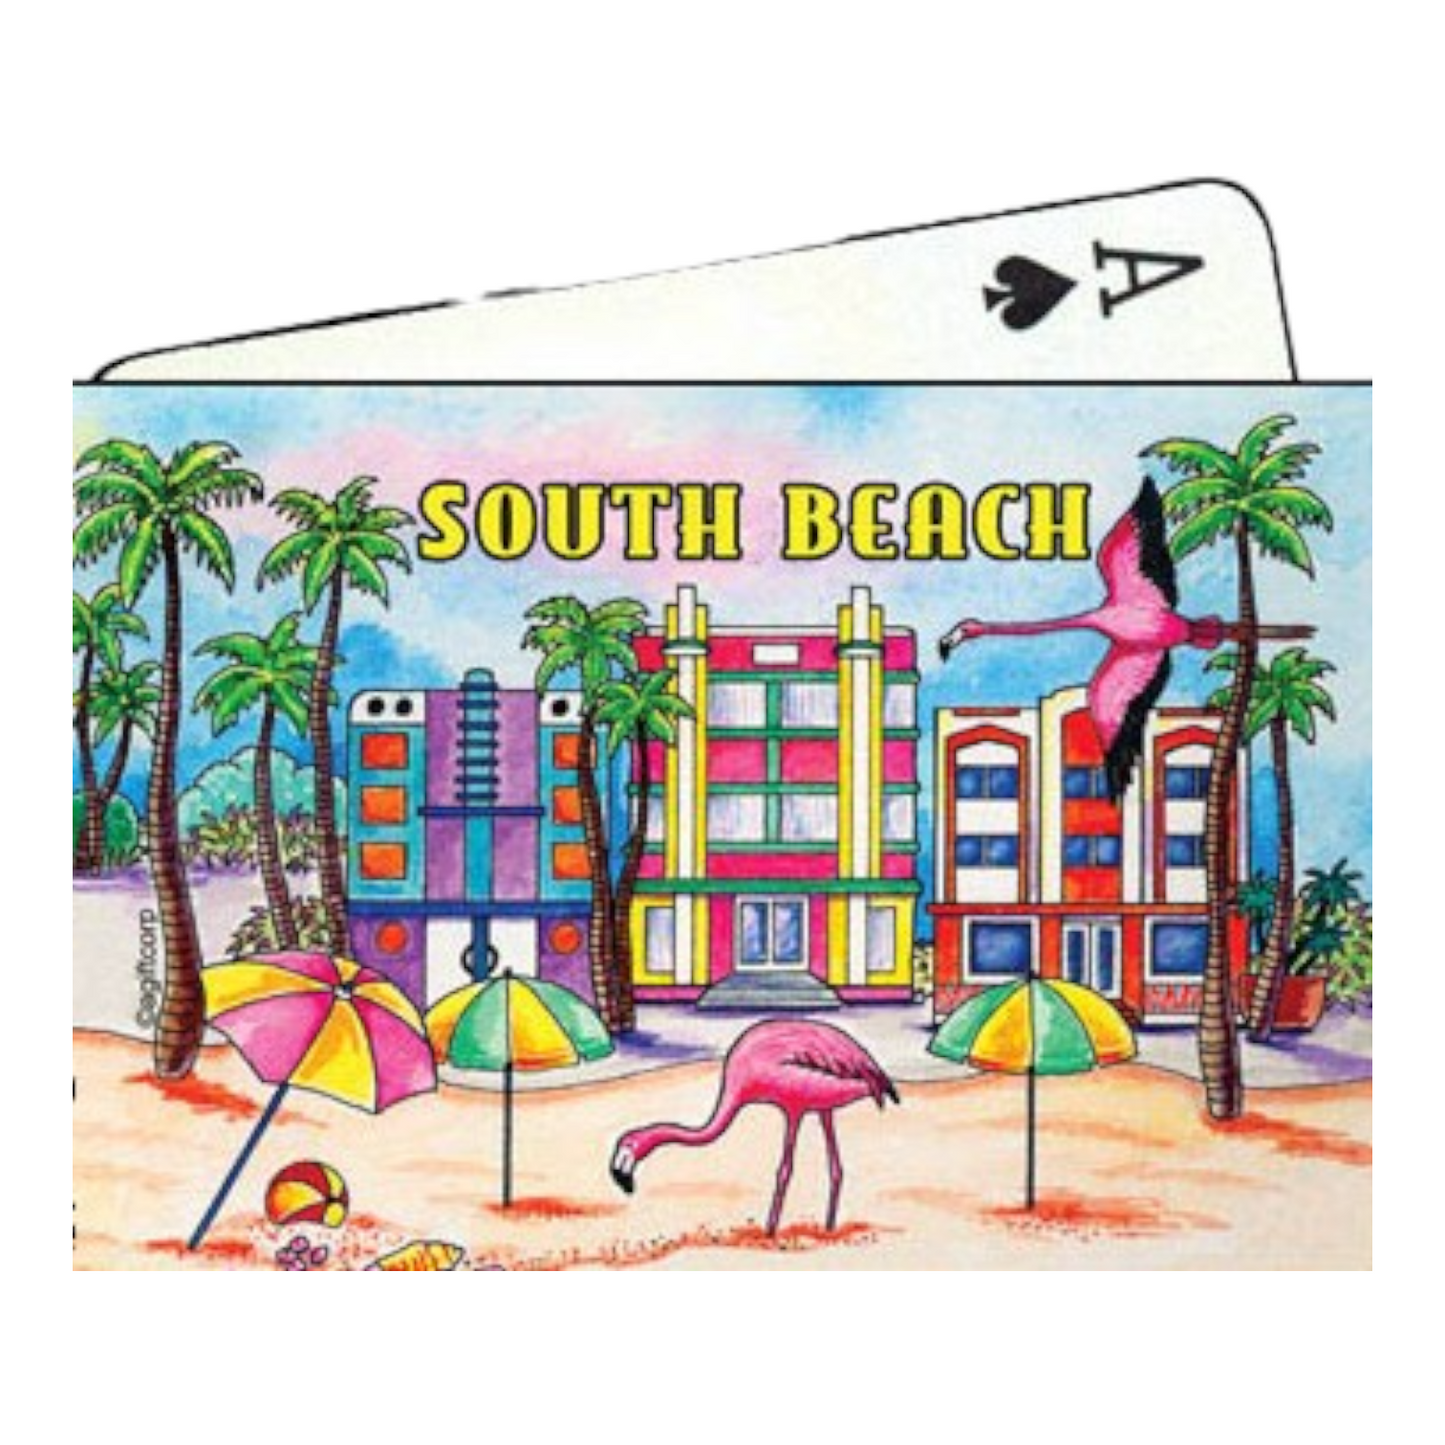 South Beach Florida Collectible Souvenir Playing Cards